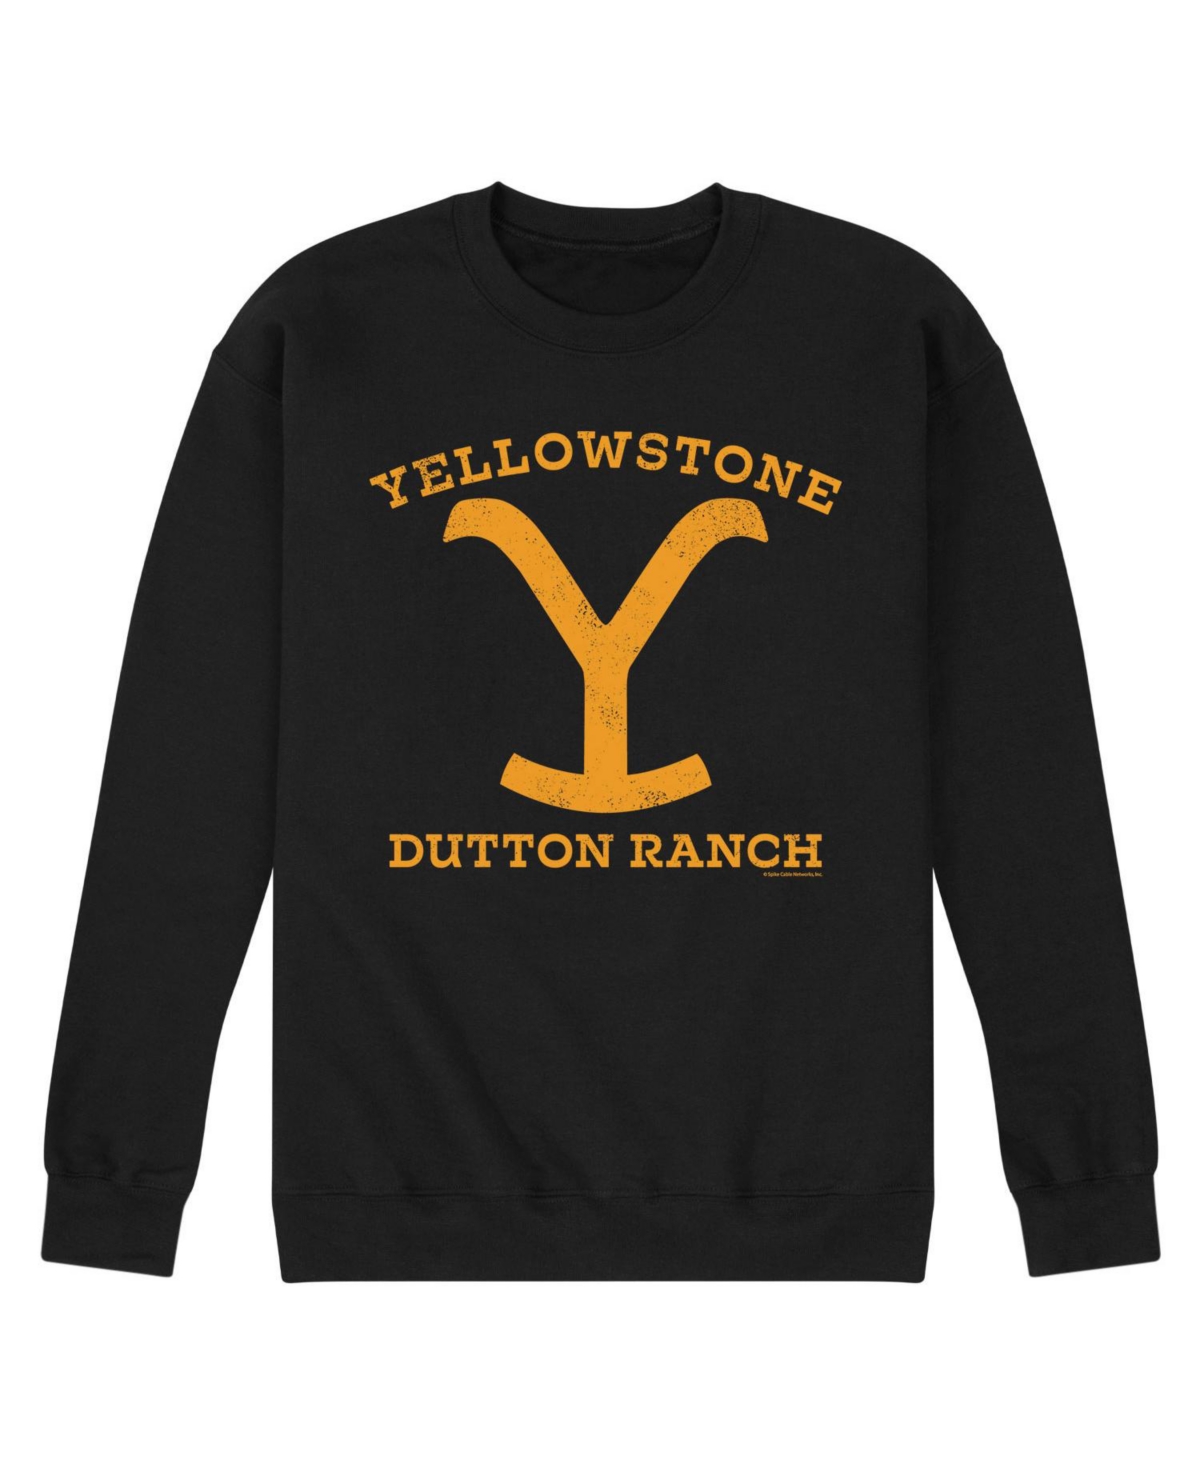 Airwaves Men's Yellowstone Dutton Ranch Fleece Sweatshirt